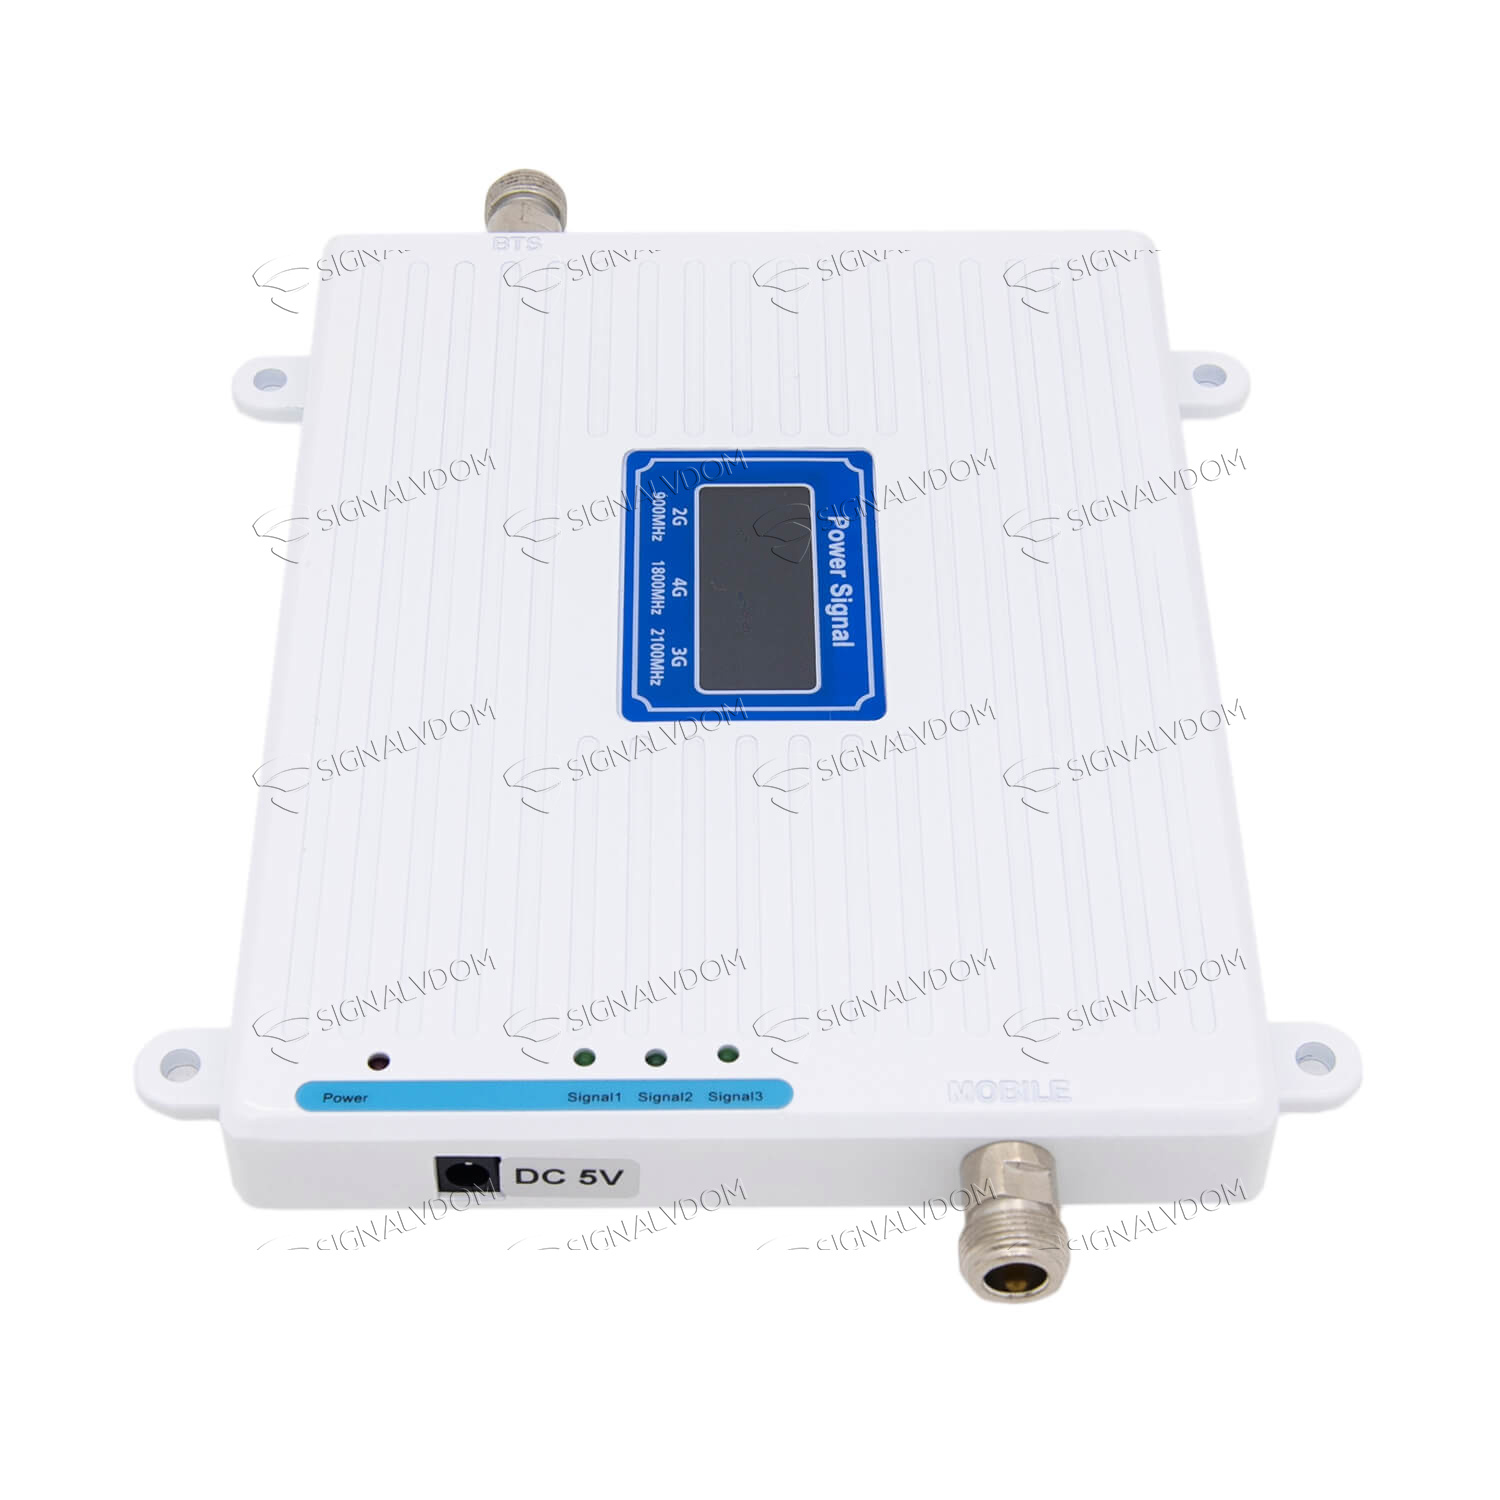 Усилитель сигнала Power Signal белый 900/1800/2100 MHz (для 2G, 3G, 4G) 70 dBi, кабель 15 м., комплект - 5